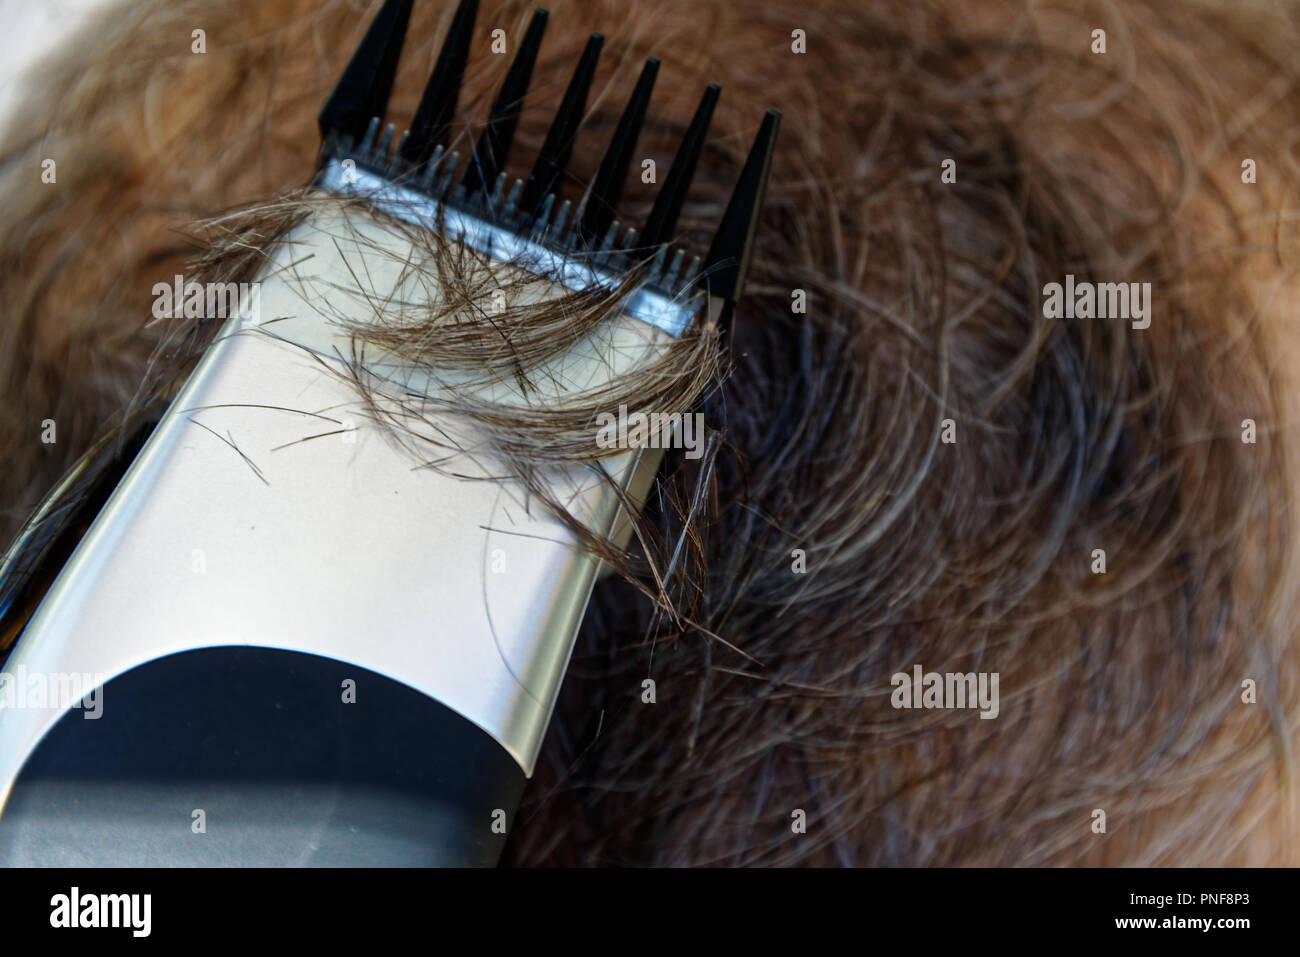 Un homme obtient une coupe de cheveux à l'aide d'tondeuse électrique plutôt que des ciseaux. Banque D'Images